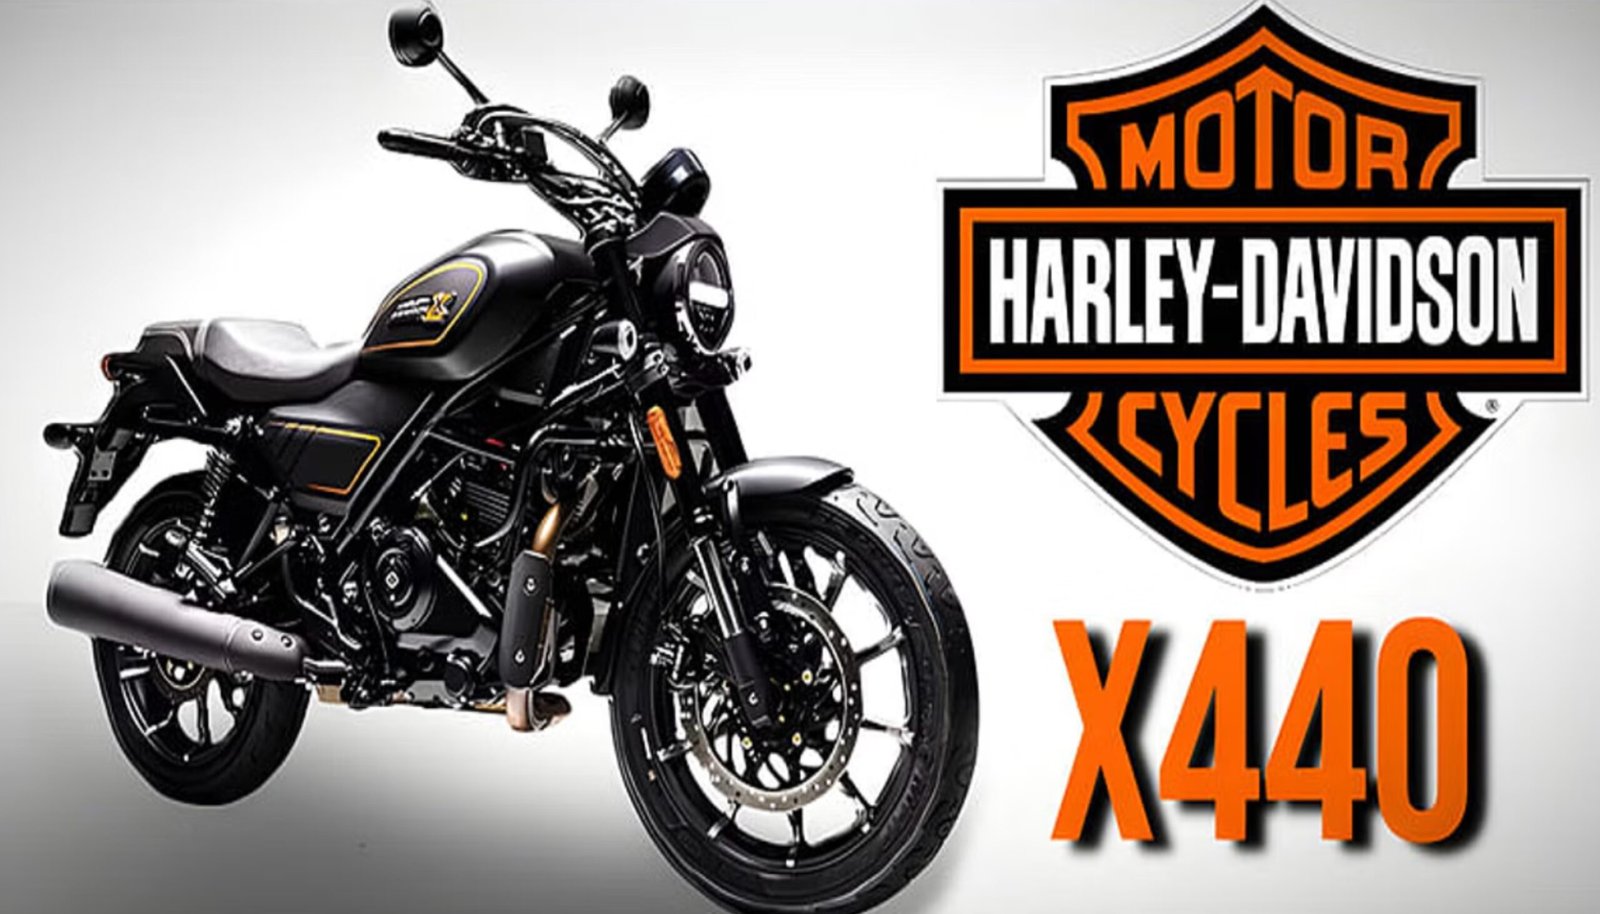 Harley Davidson X 440 - इन धाकड़ फीचर्स लैस होंगी हीरो की ये नई बाइक, जानिए कब देगी दस्तक?